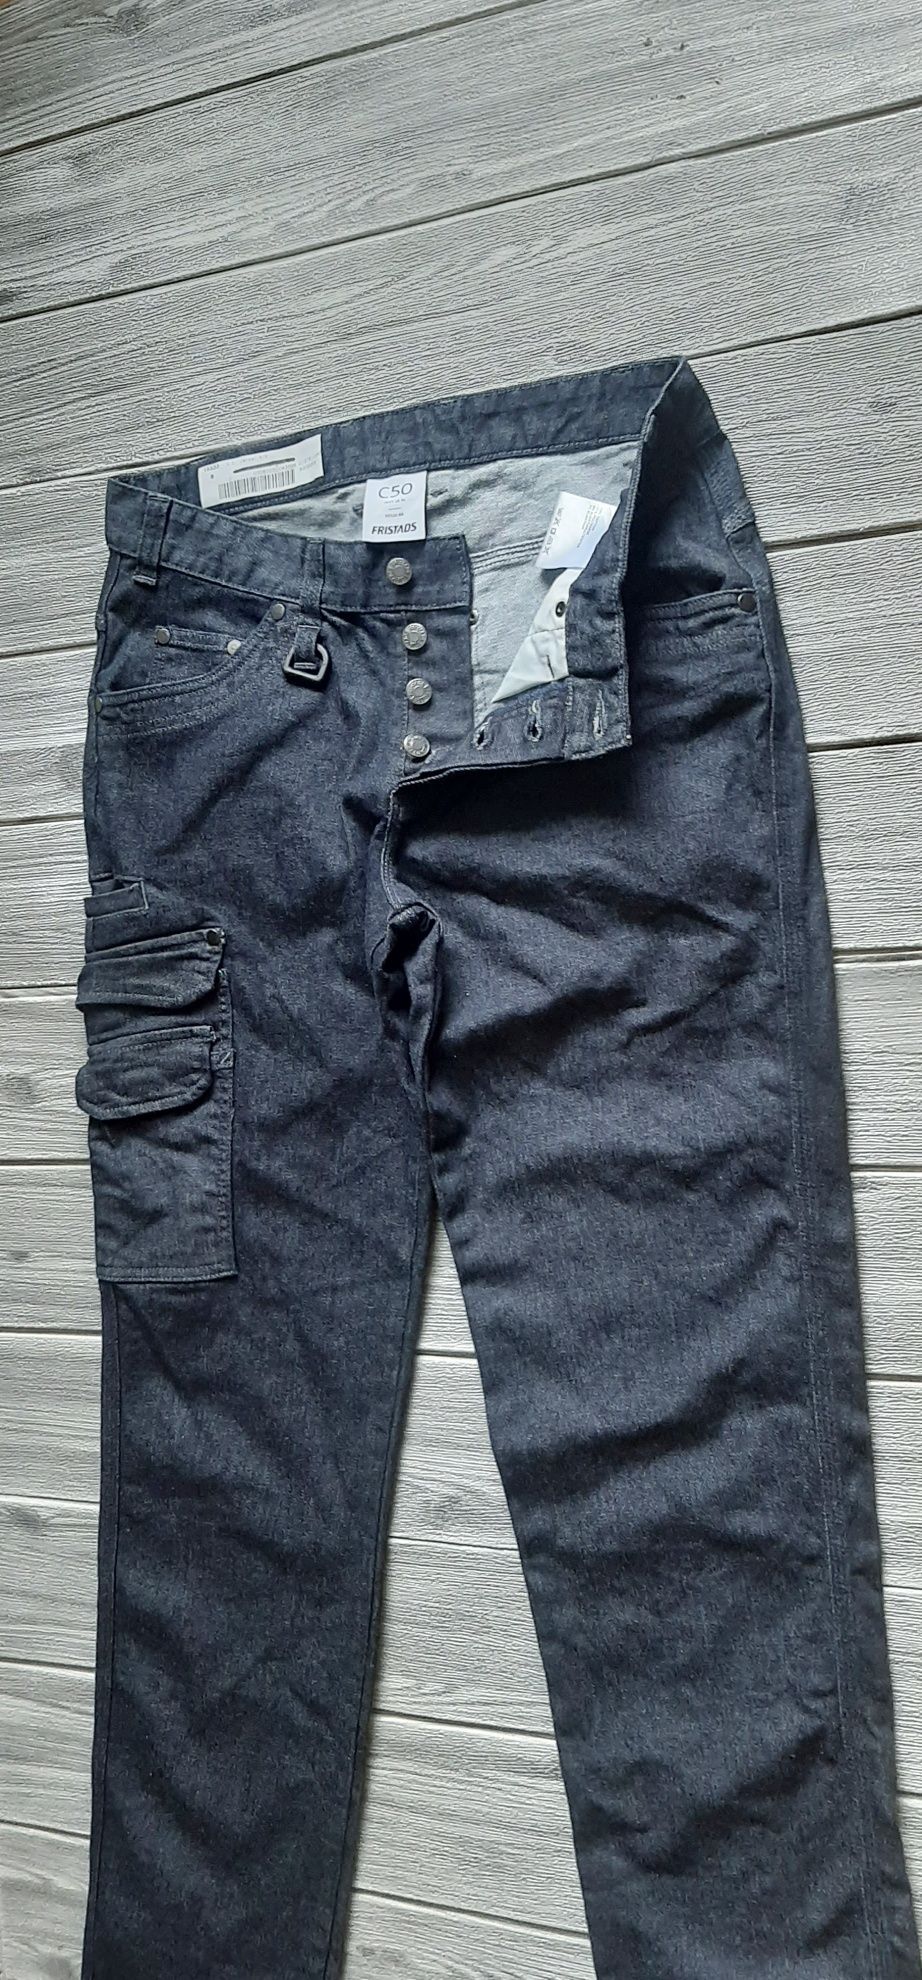 Fristads spodnie robocze damskie bojówki kieszenie jeansy Cordura M